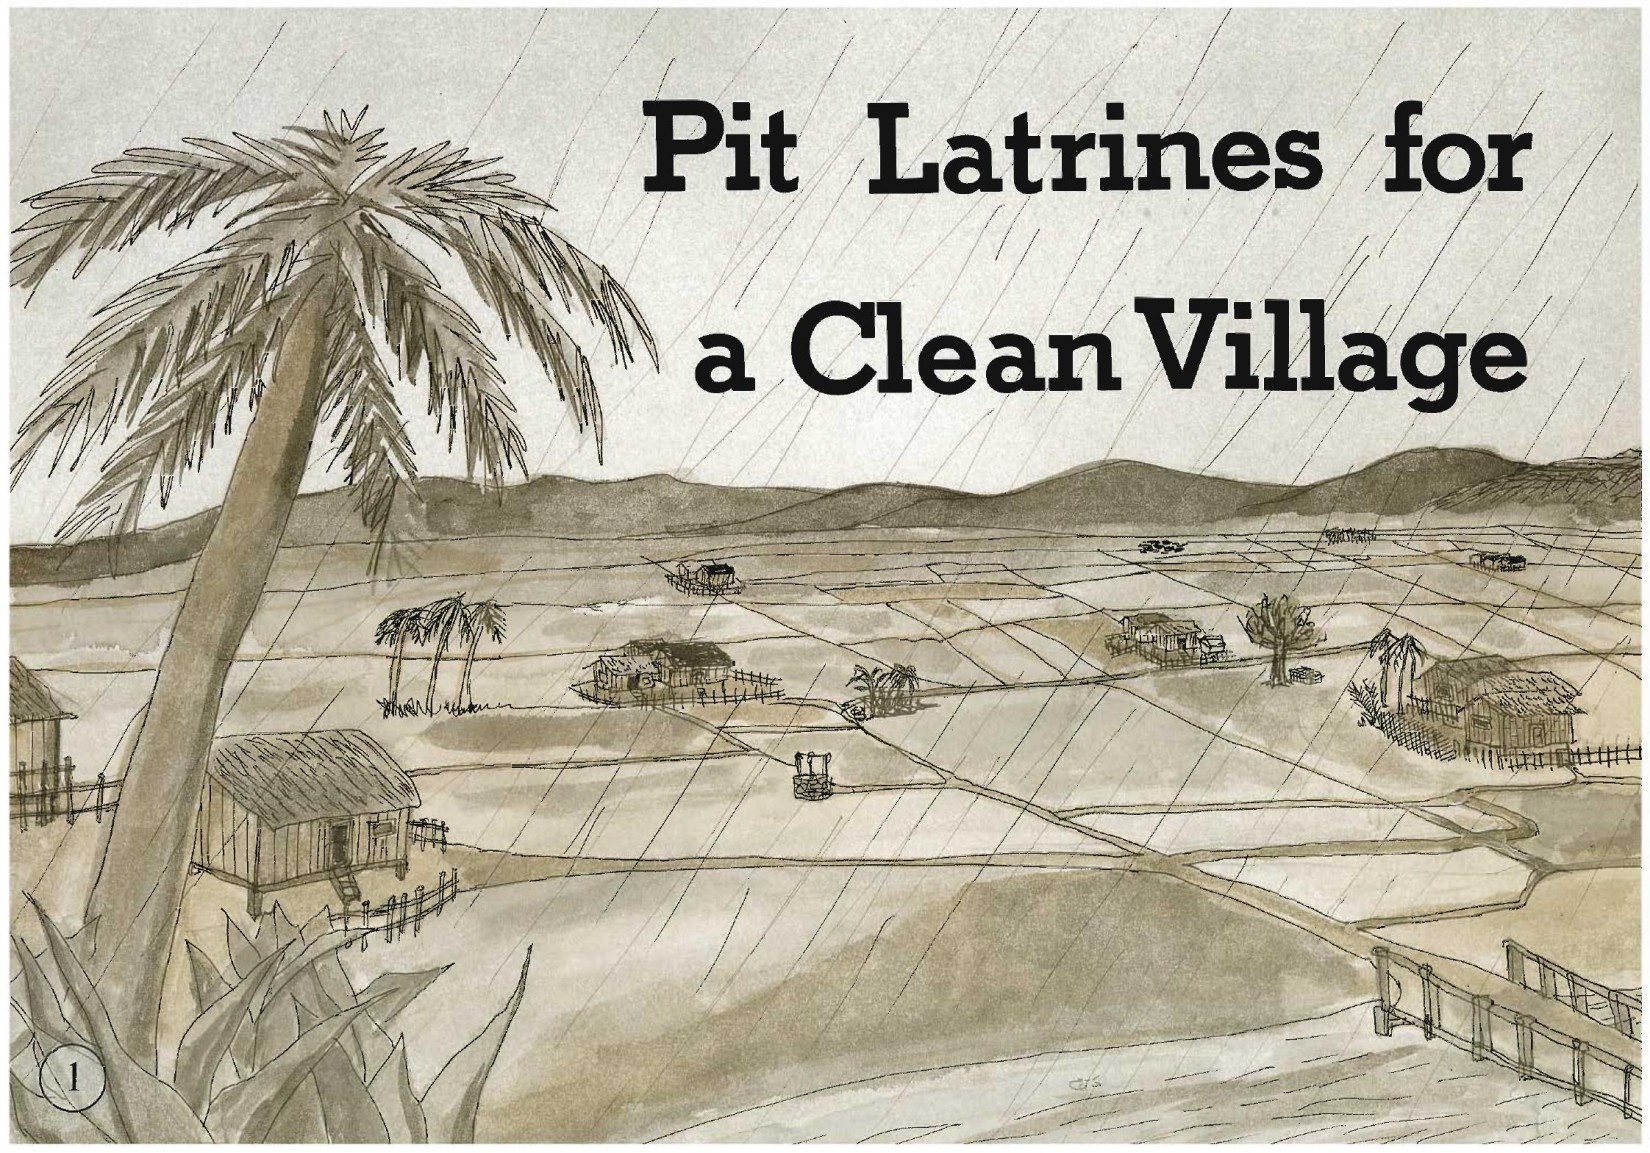 Pit Latrines for a Clean Village